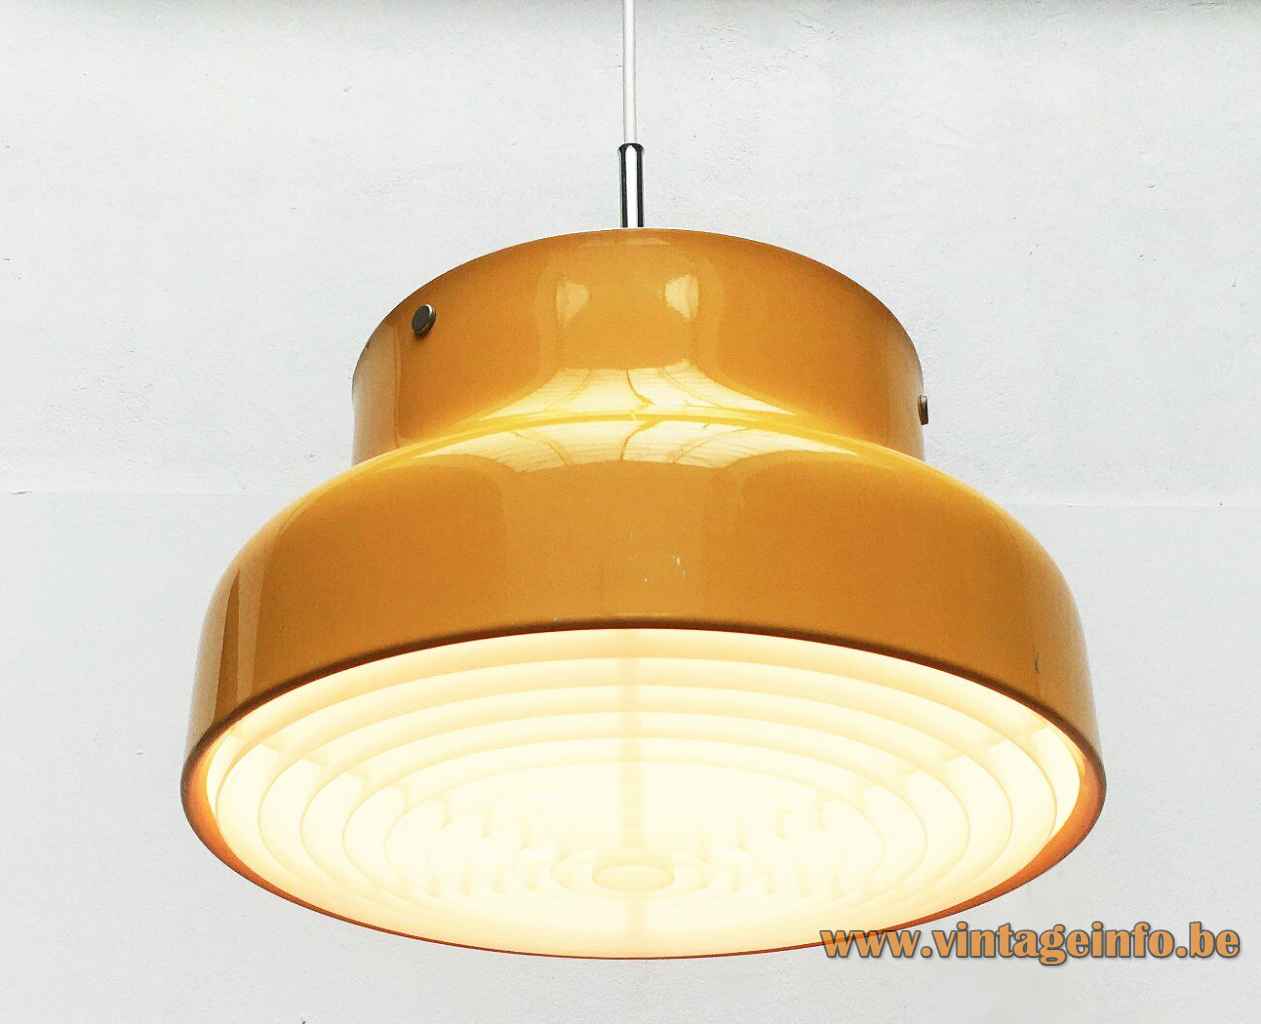 Ateljé Lyktan Bumling Pendant Lamp About Vintage Lighting